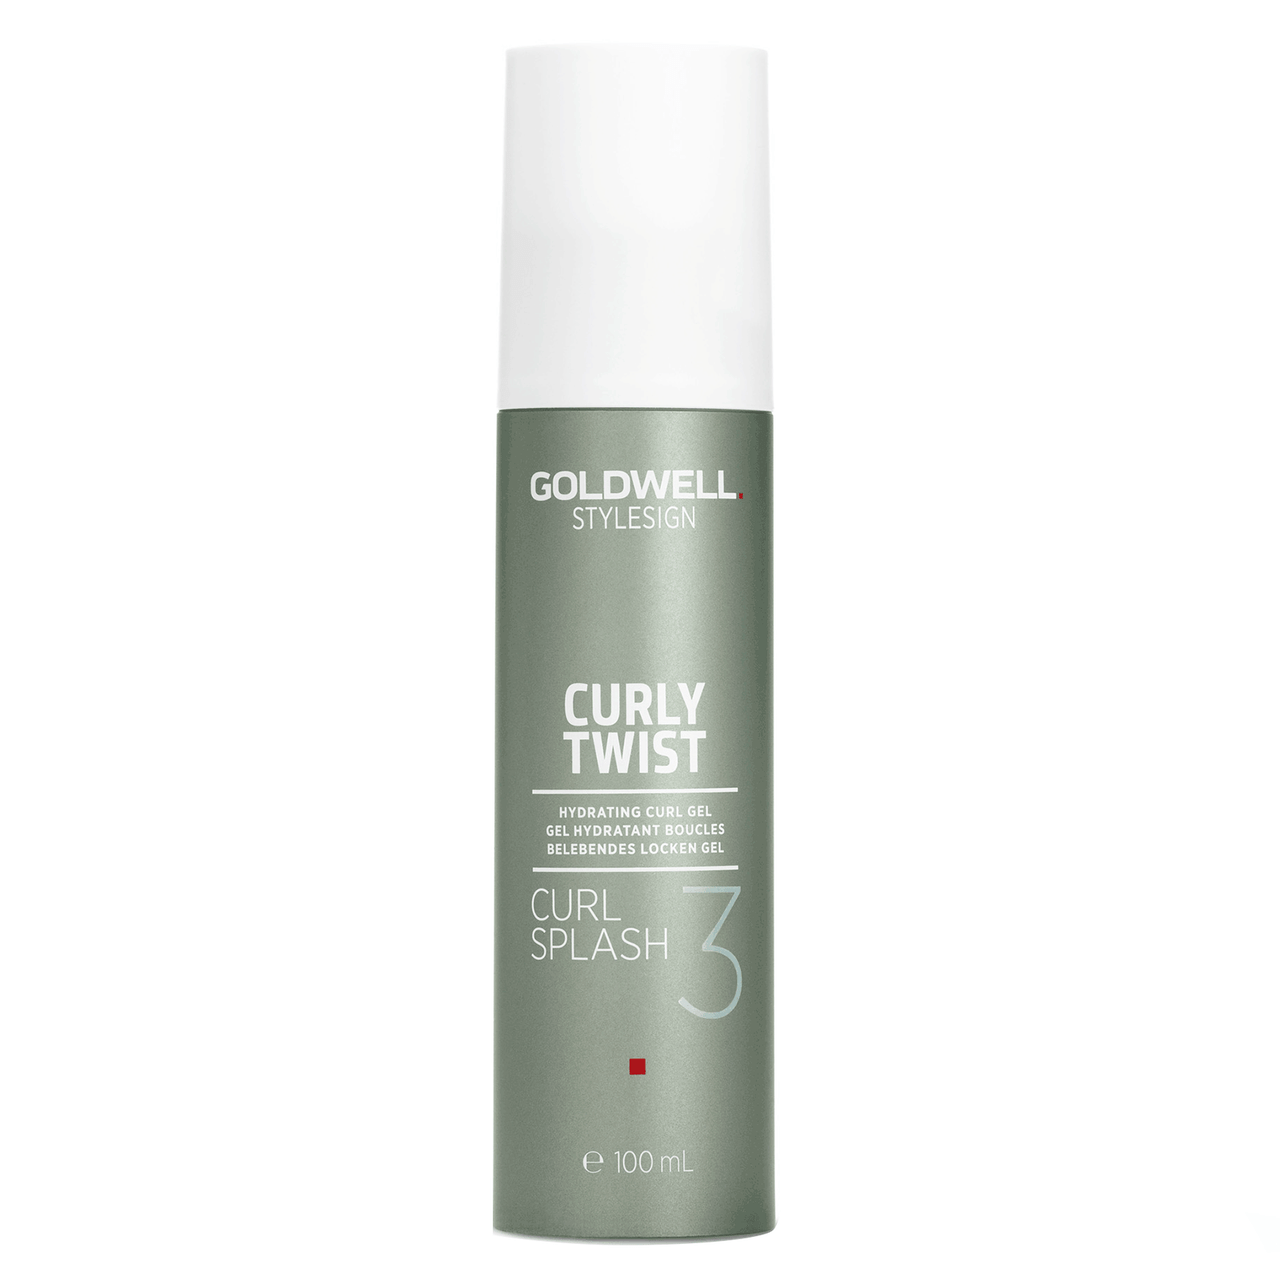 Goldwell  StyleSign - Curly Twist Curl Splash Hydrating Curl Gel 3.3 fl. oz.